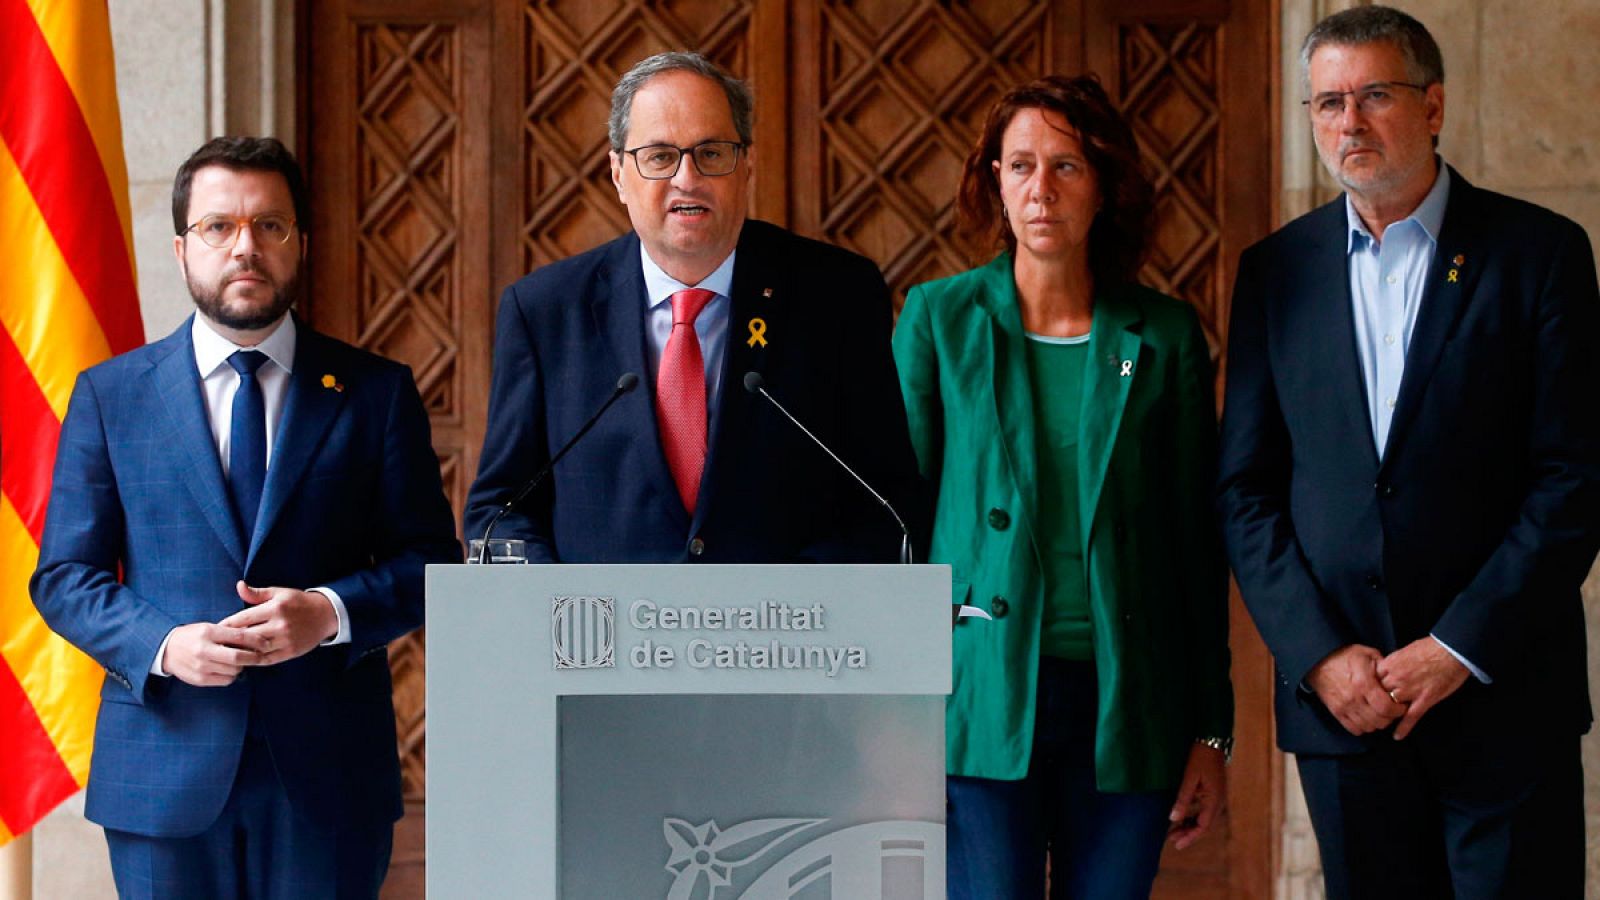 Cataluña | Torra insiste en desvincular la violencia del independentismo y pide a Sánchez una reunión sin condiciones